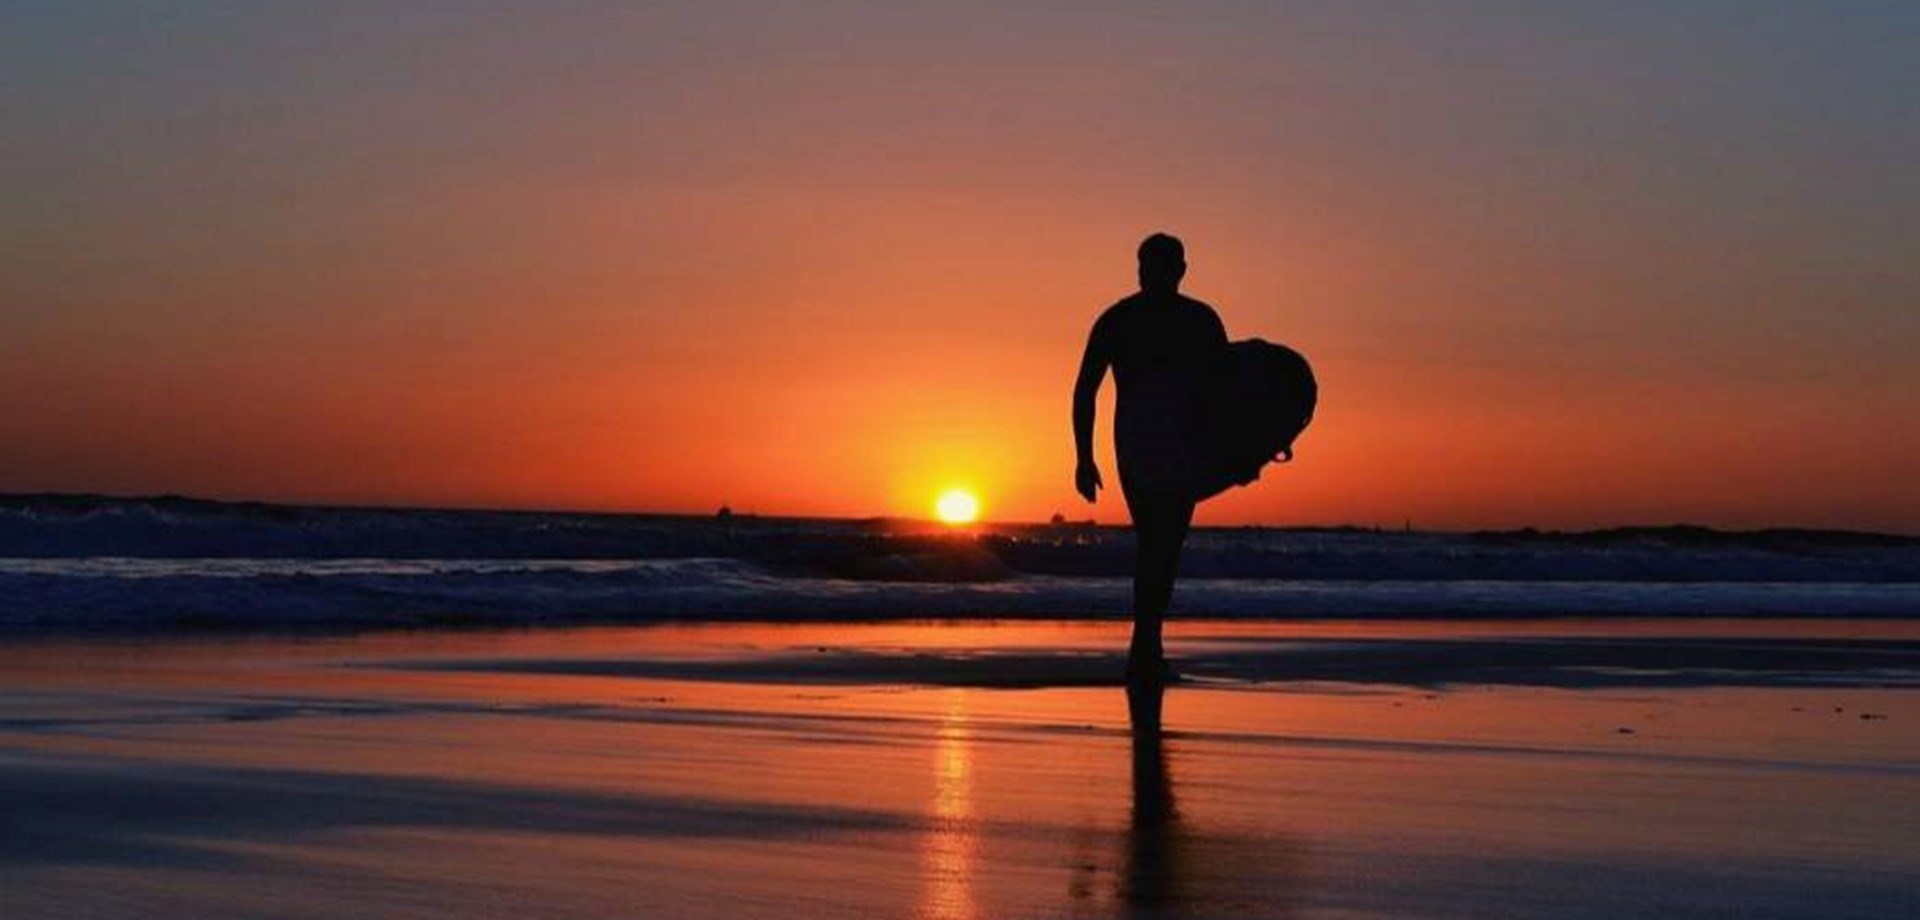 Découvrez pourquoi l’Algarve est un paradis pour le surf et trouvez les meilleures plages pour le pratiquer.